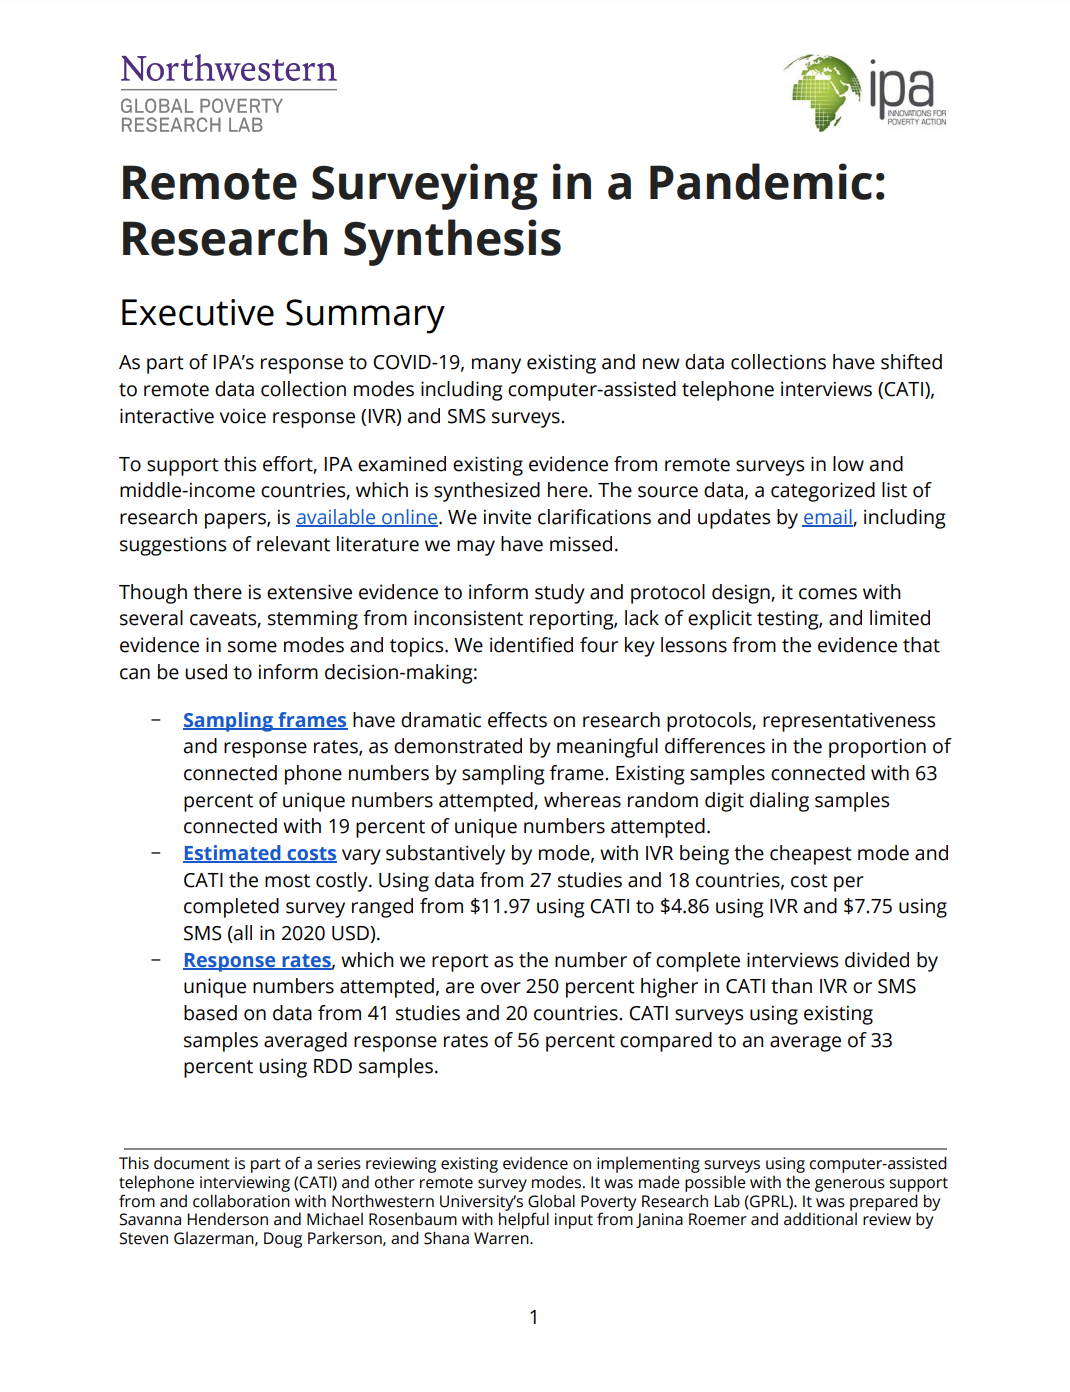 Síntesis de investigación de encuestas remotas en una pandemia - Imagen de la primera página del documento